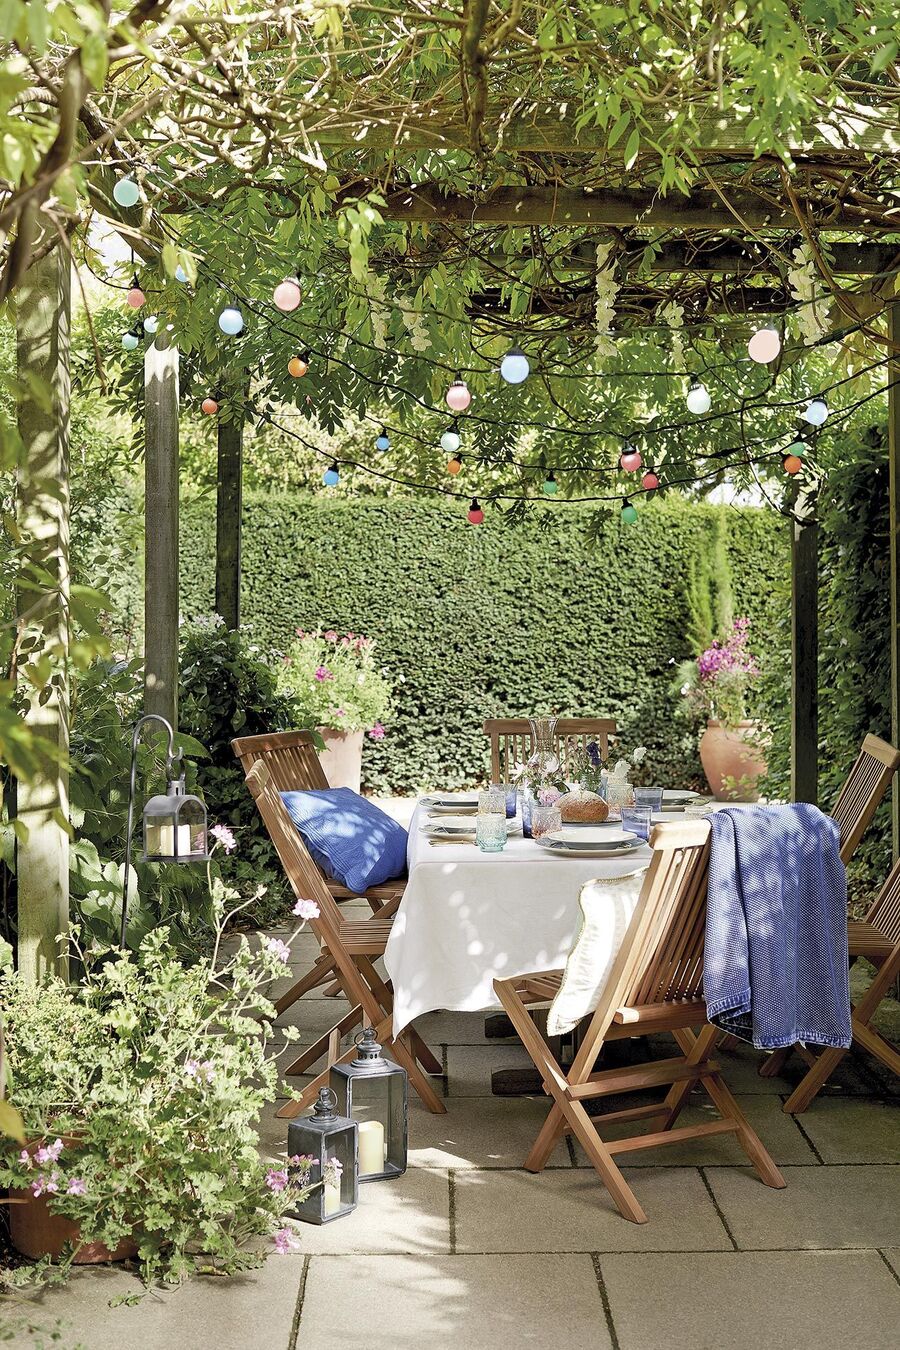 Terraza con treillage con plantas enredaderas y un comedor debajo. La mesa está cubierta con un mantel blanco y alrededor hay seis sillas de madera.